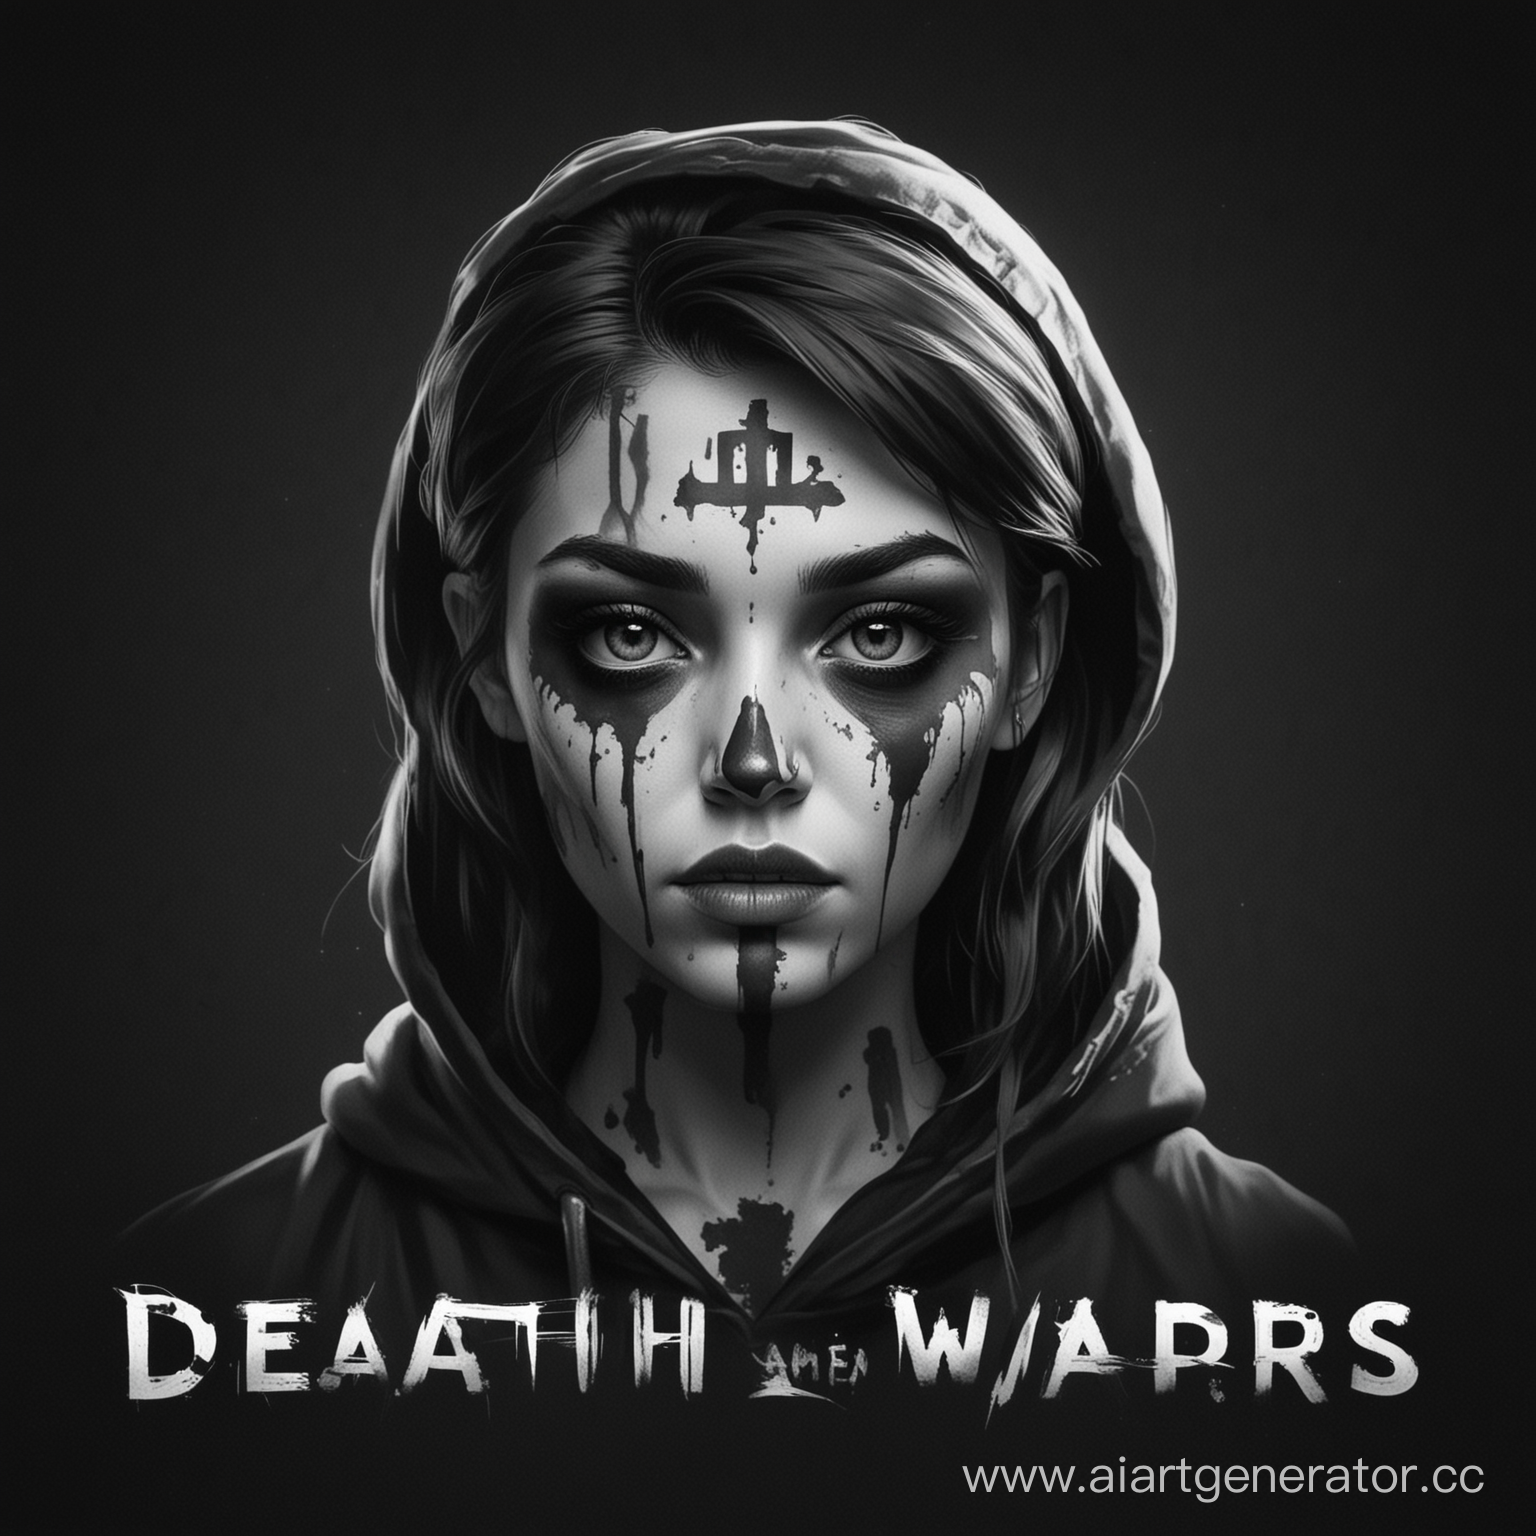 Нарисуй мне черно белую аватарку с своим уникальным значком а снизу значка было написано "Death Wars"